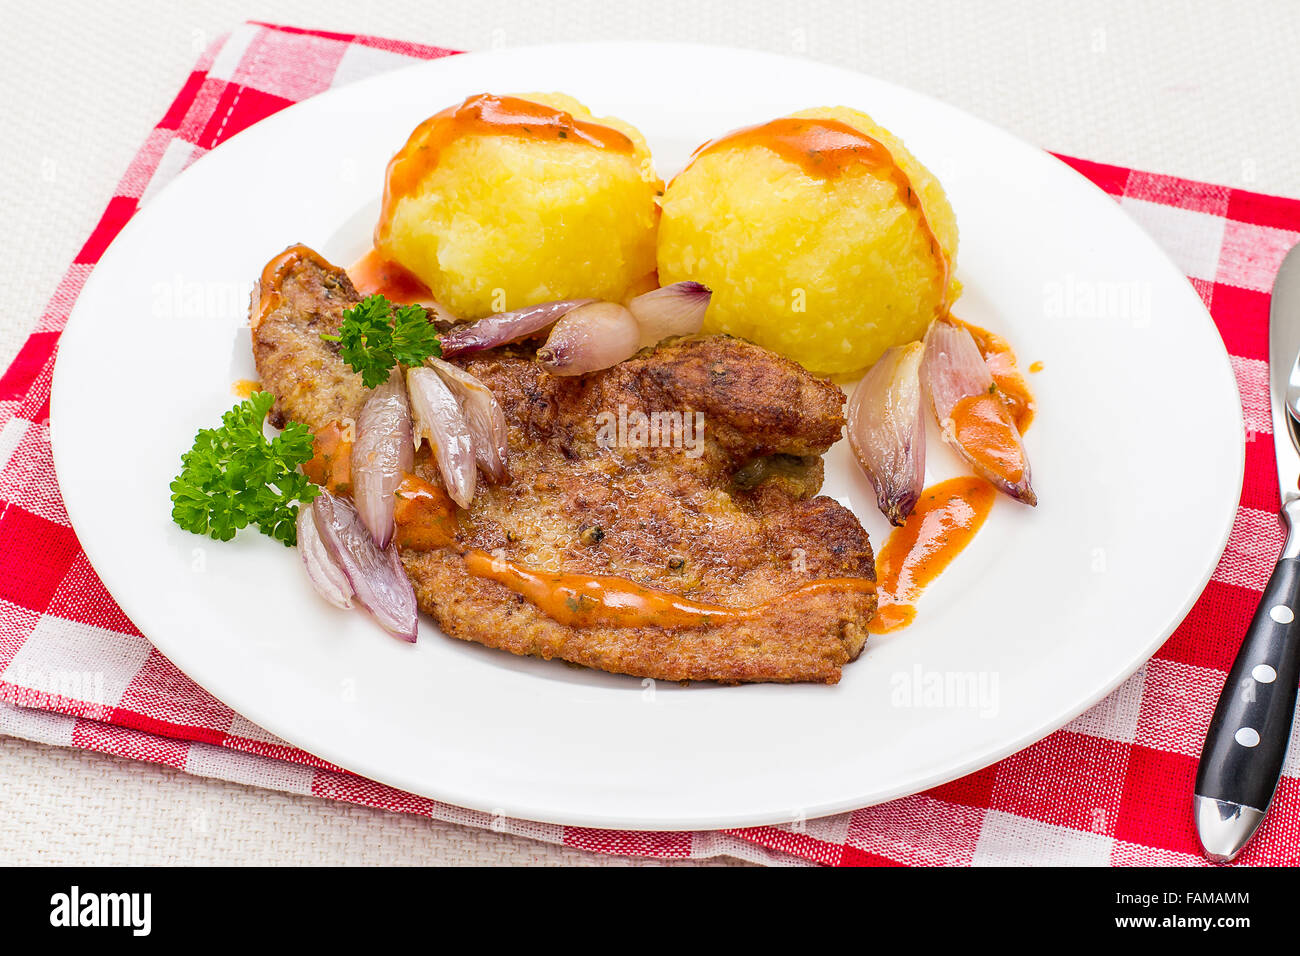 Hígado de ternera frita con chalotes y dumplings de patata Foto de stock